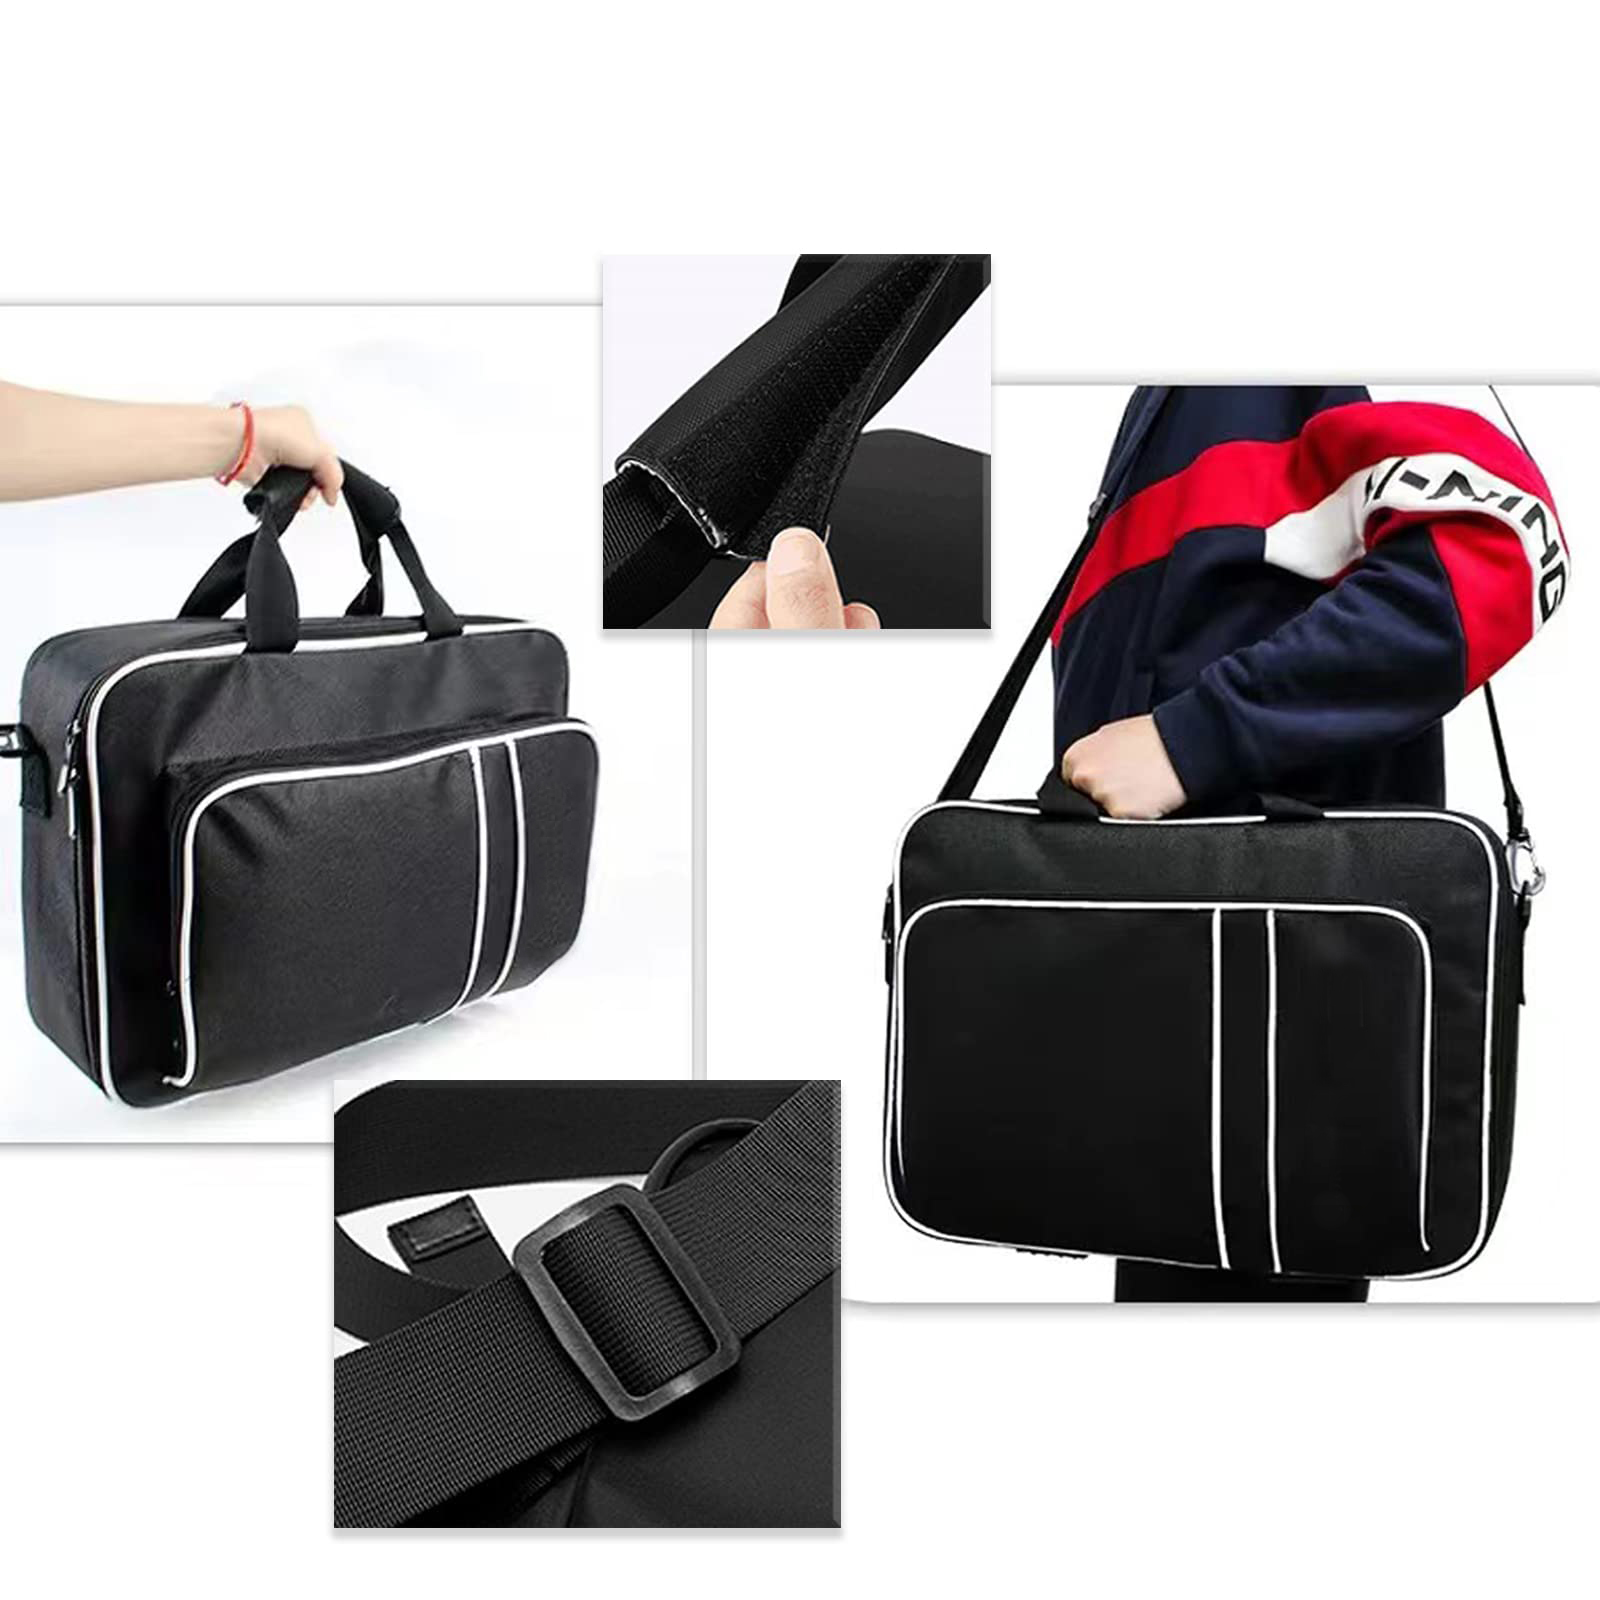 PS5 Bookbag - PlayStation 5 Bag Custom Game Cases | JUNYUAN Bags